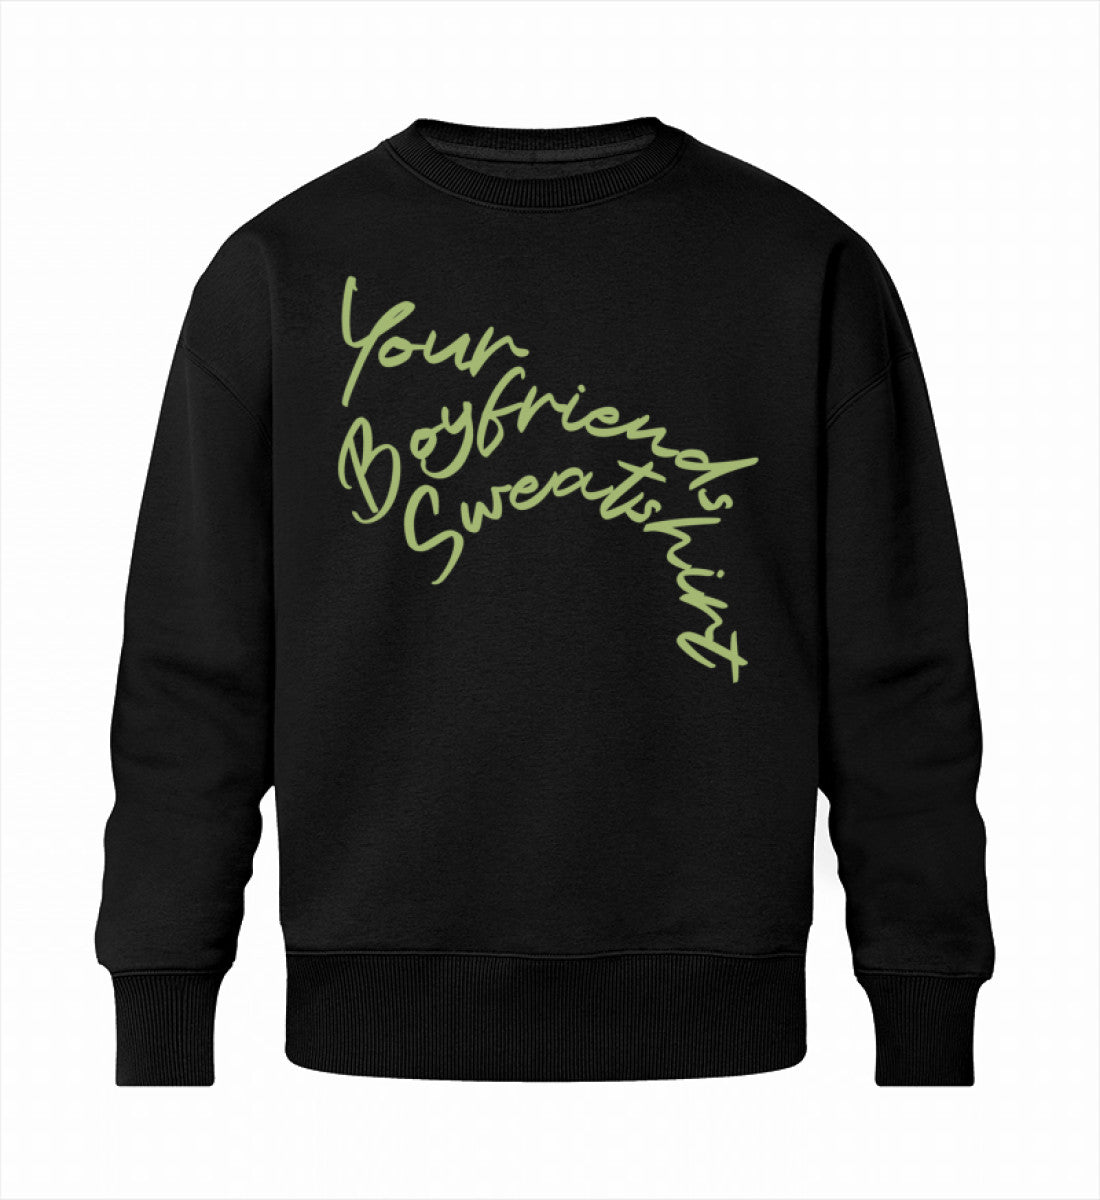 Schwarzes Sweatshirt Unisex für Frauen und Männer bedruckt mit dem Design der Roger Rockawoo Kollektion Your Boyfriends Sweatshirt